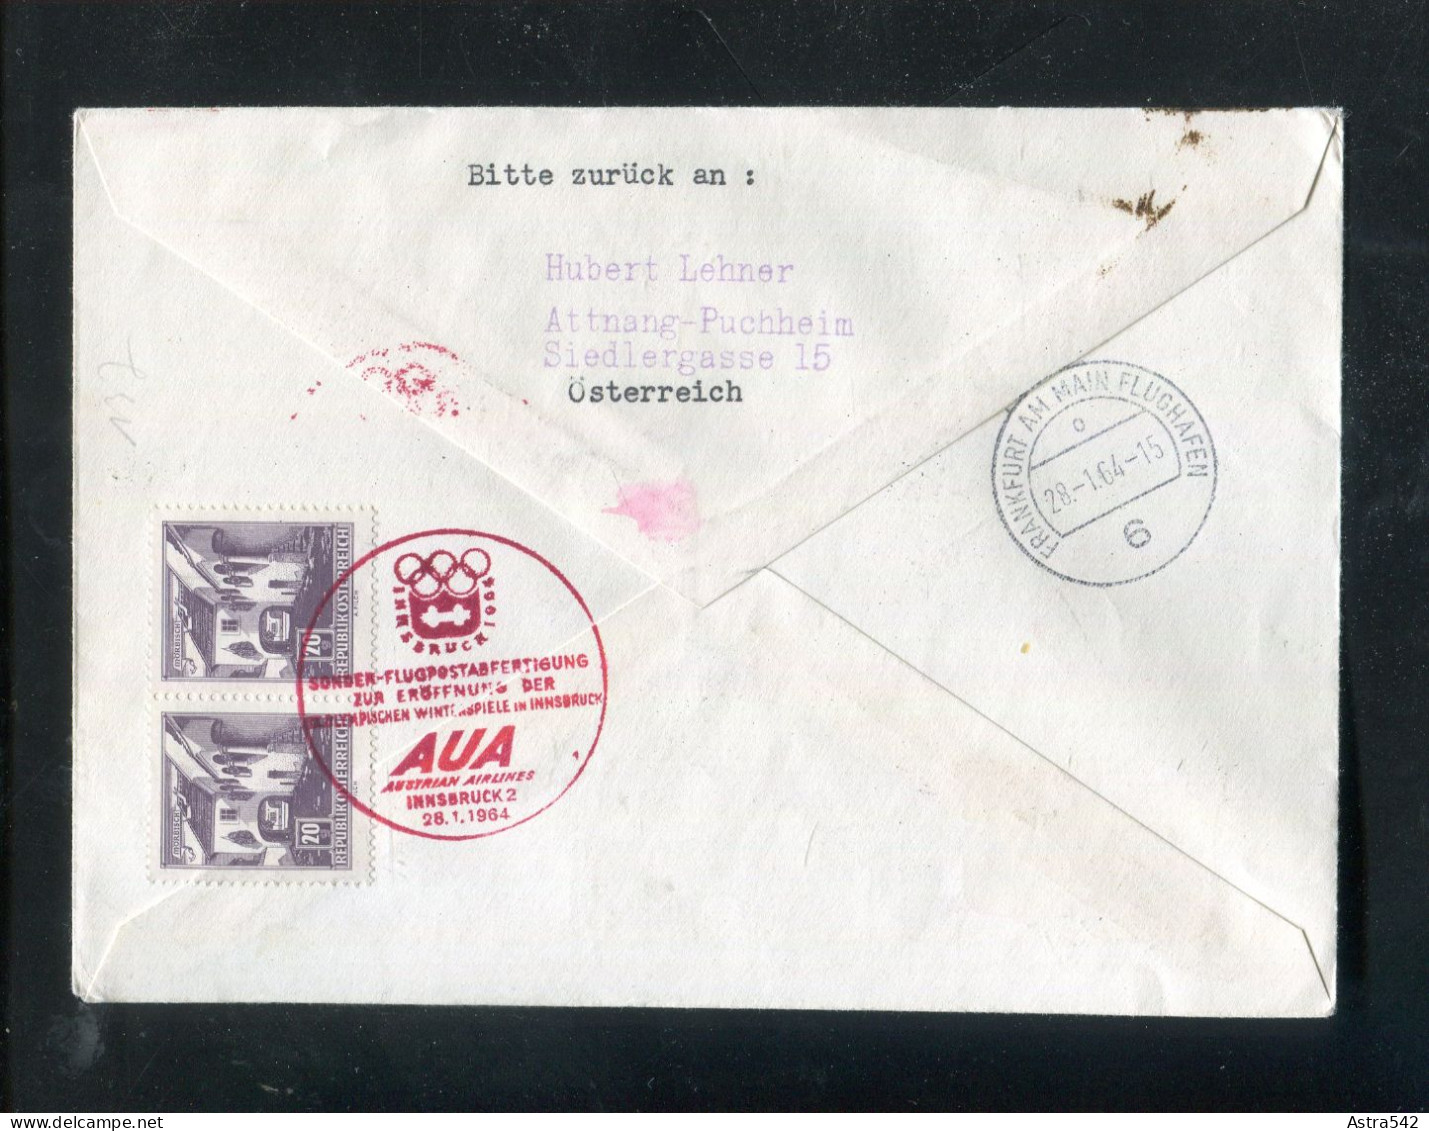 "OESTERREICH" 1964, AUA-Olympiade-Sonderflugbrief "Innsbruck-Frankfurt" (A0025) - First Flight Covers